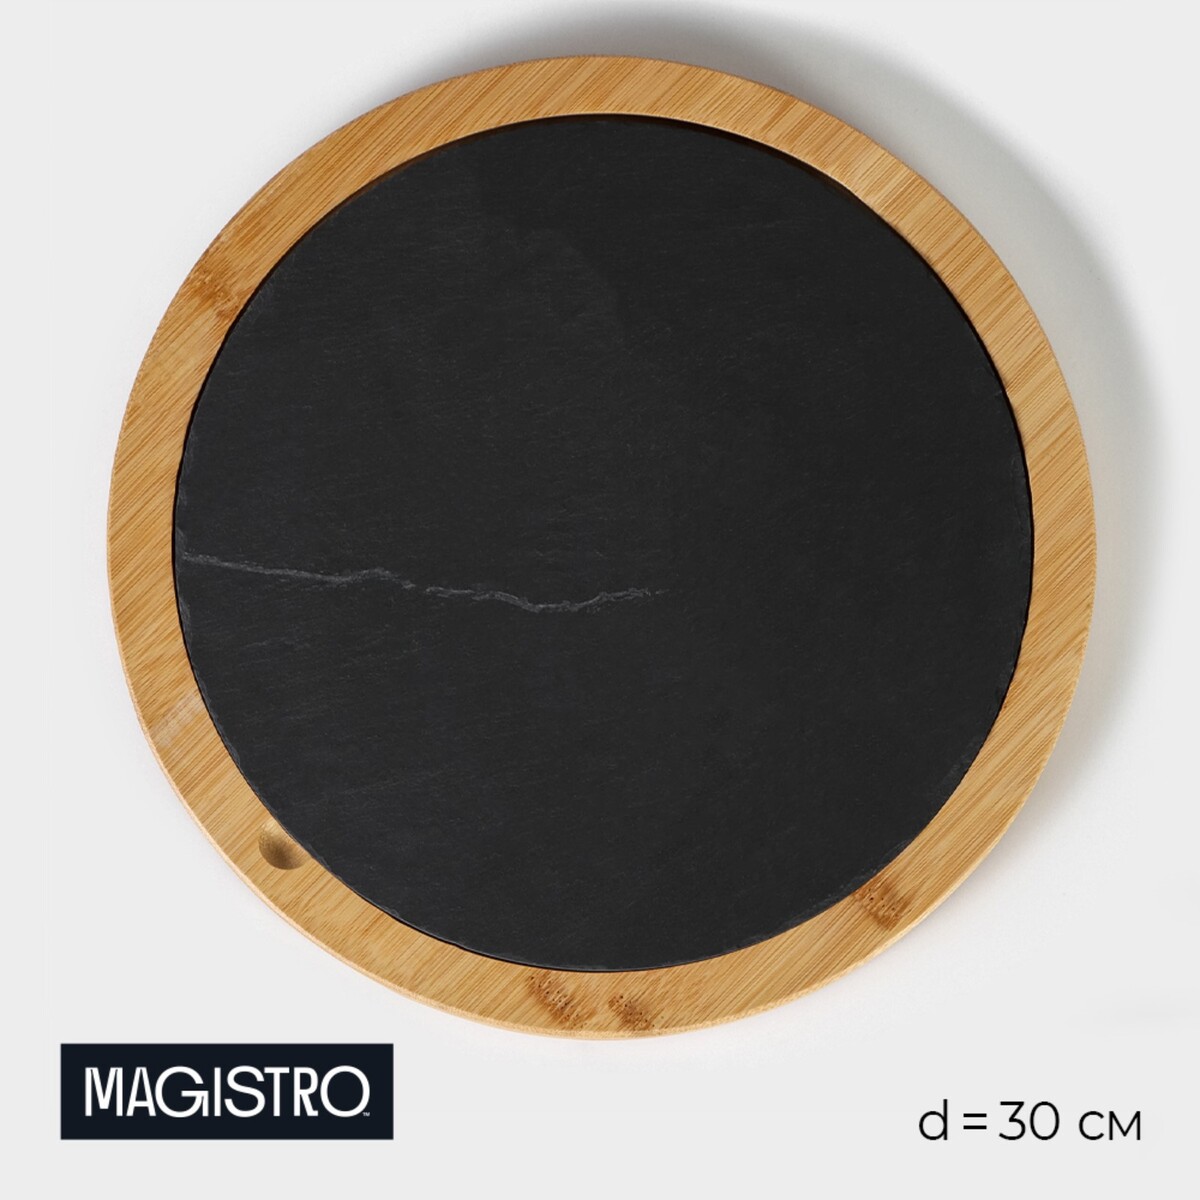 Блюдо для подачи magistro valley, d=30 см, сланец, бамбук блюдо фарфоровое для подачи magistro pietra lunare 25×12 см чёрный